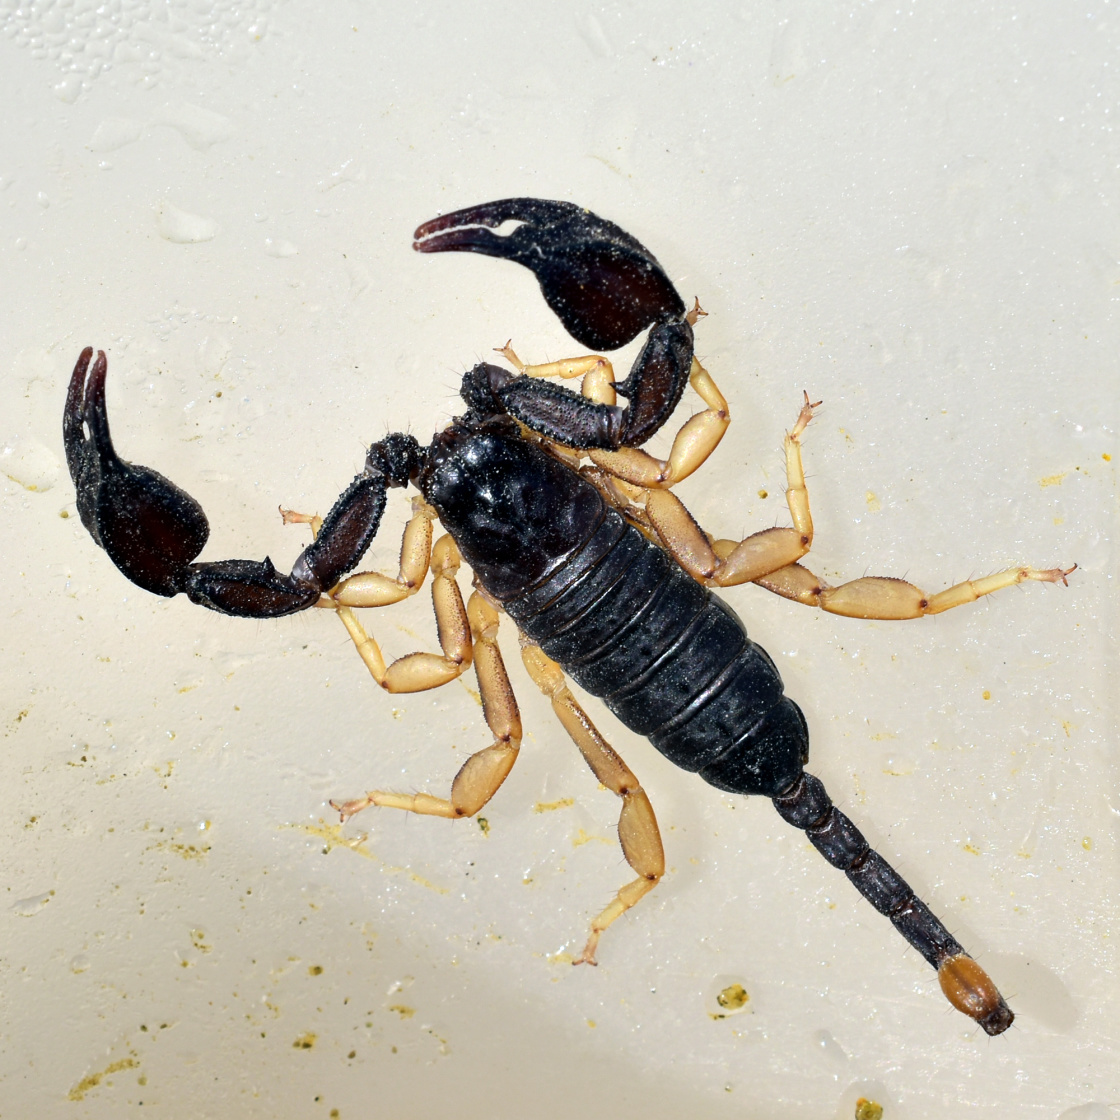 3-D-Aufnahme einer Buchlunge eines Skorpions - vergrößerte Ansicht